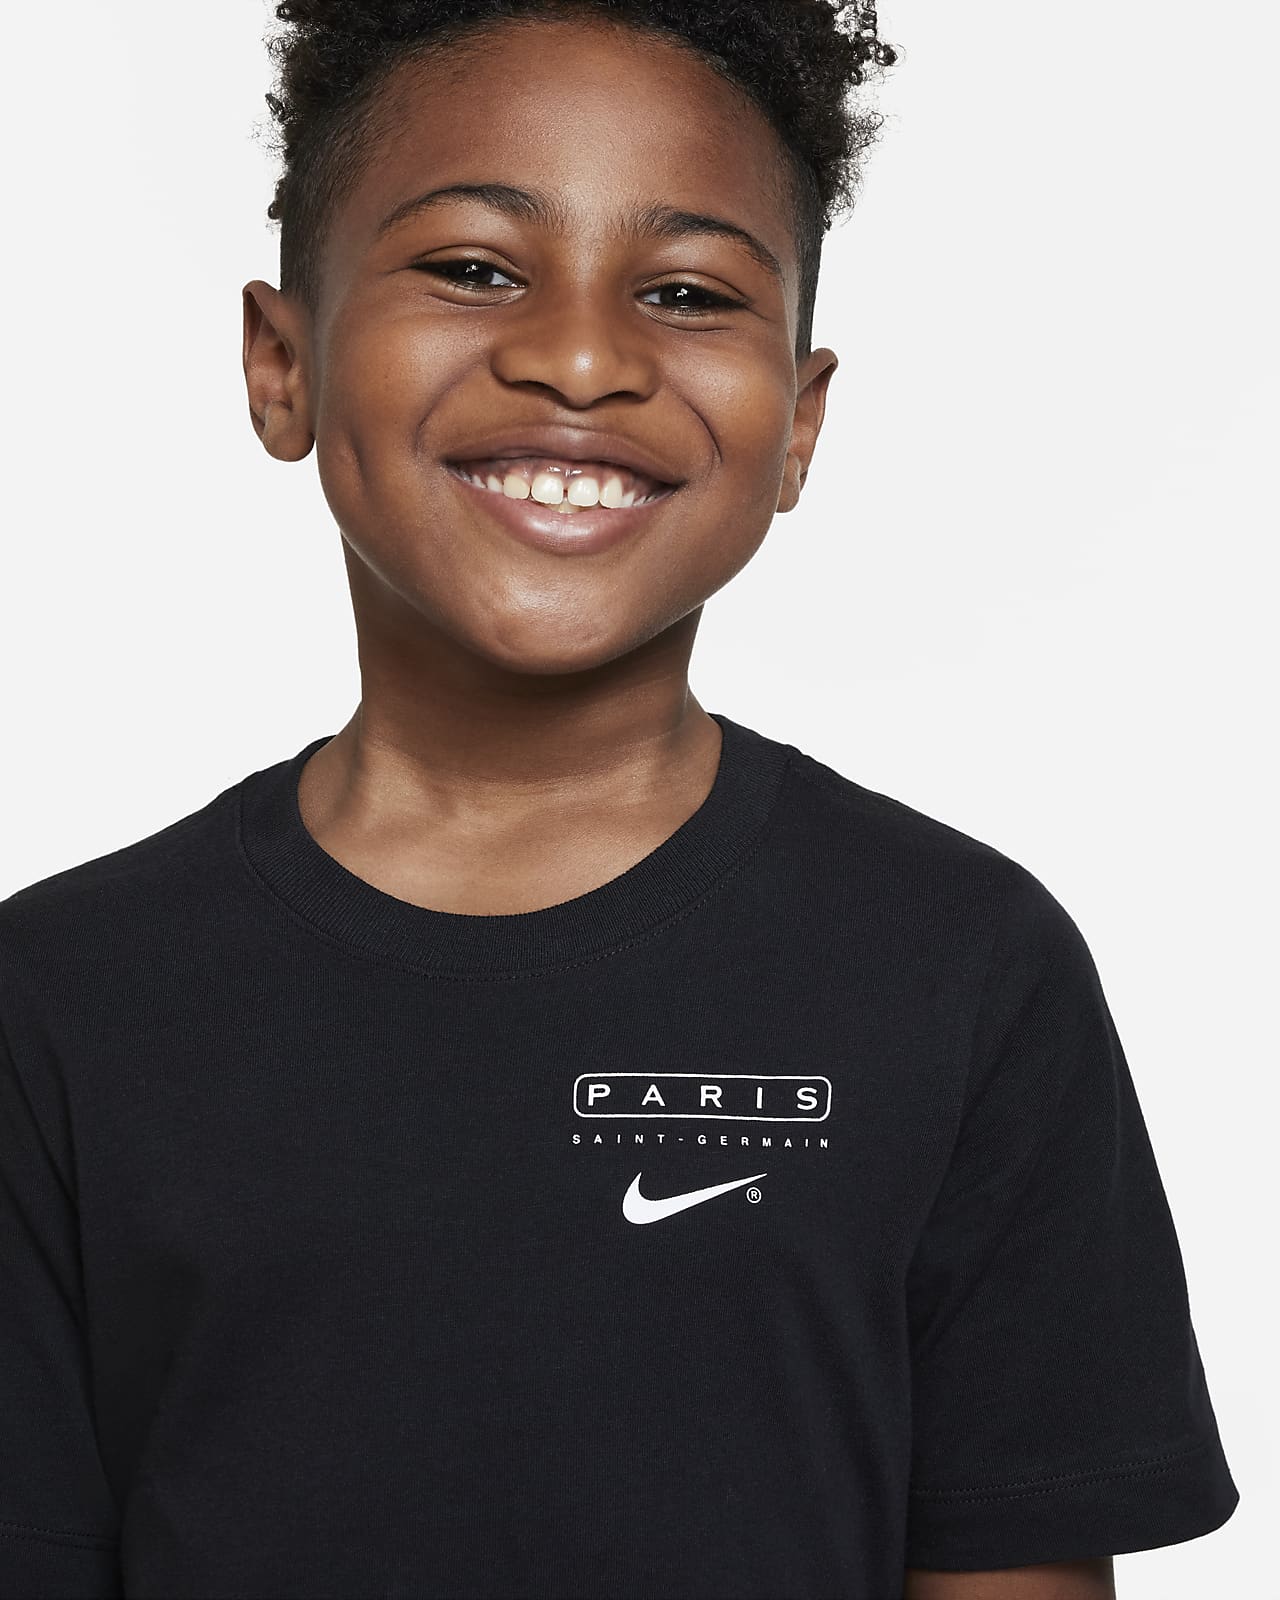 Nike公式 パリ サンジェルマン スウッシュ ジュニア サッカー Tシャツ オンラインストア 通販サイト